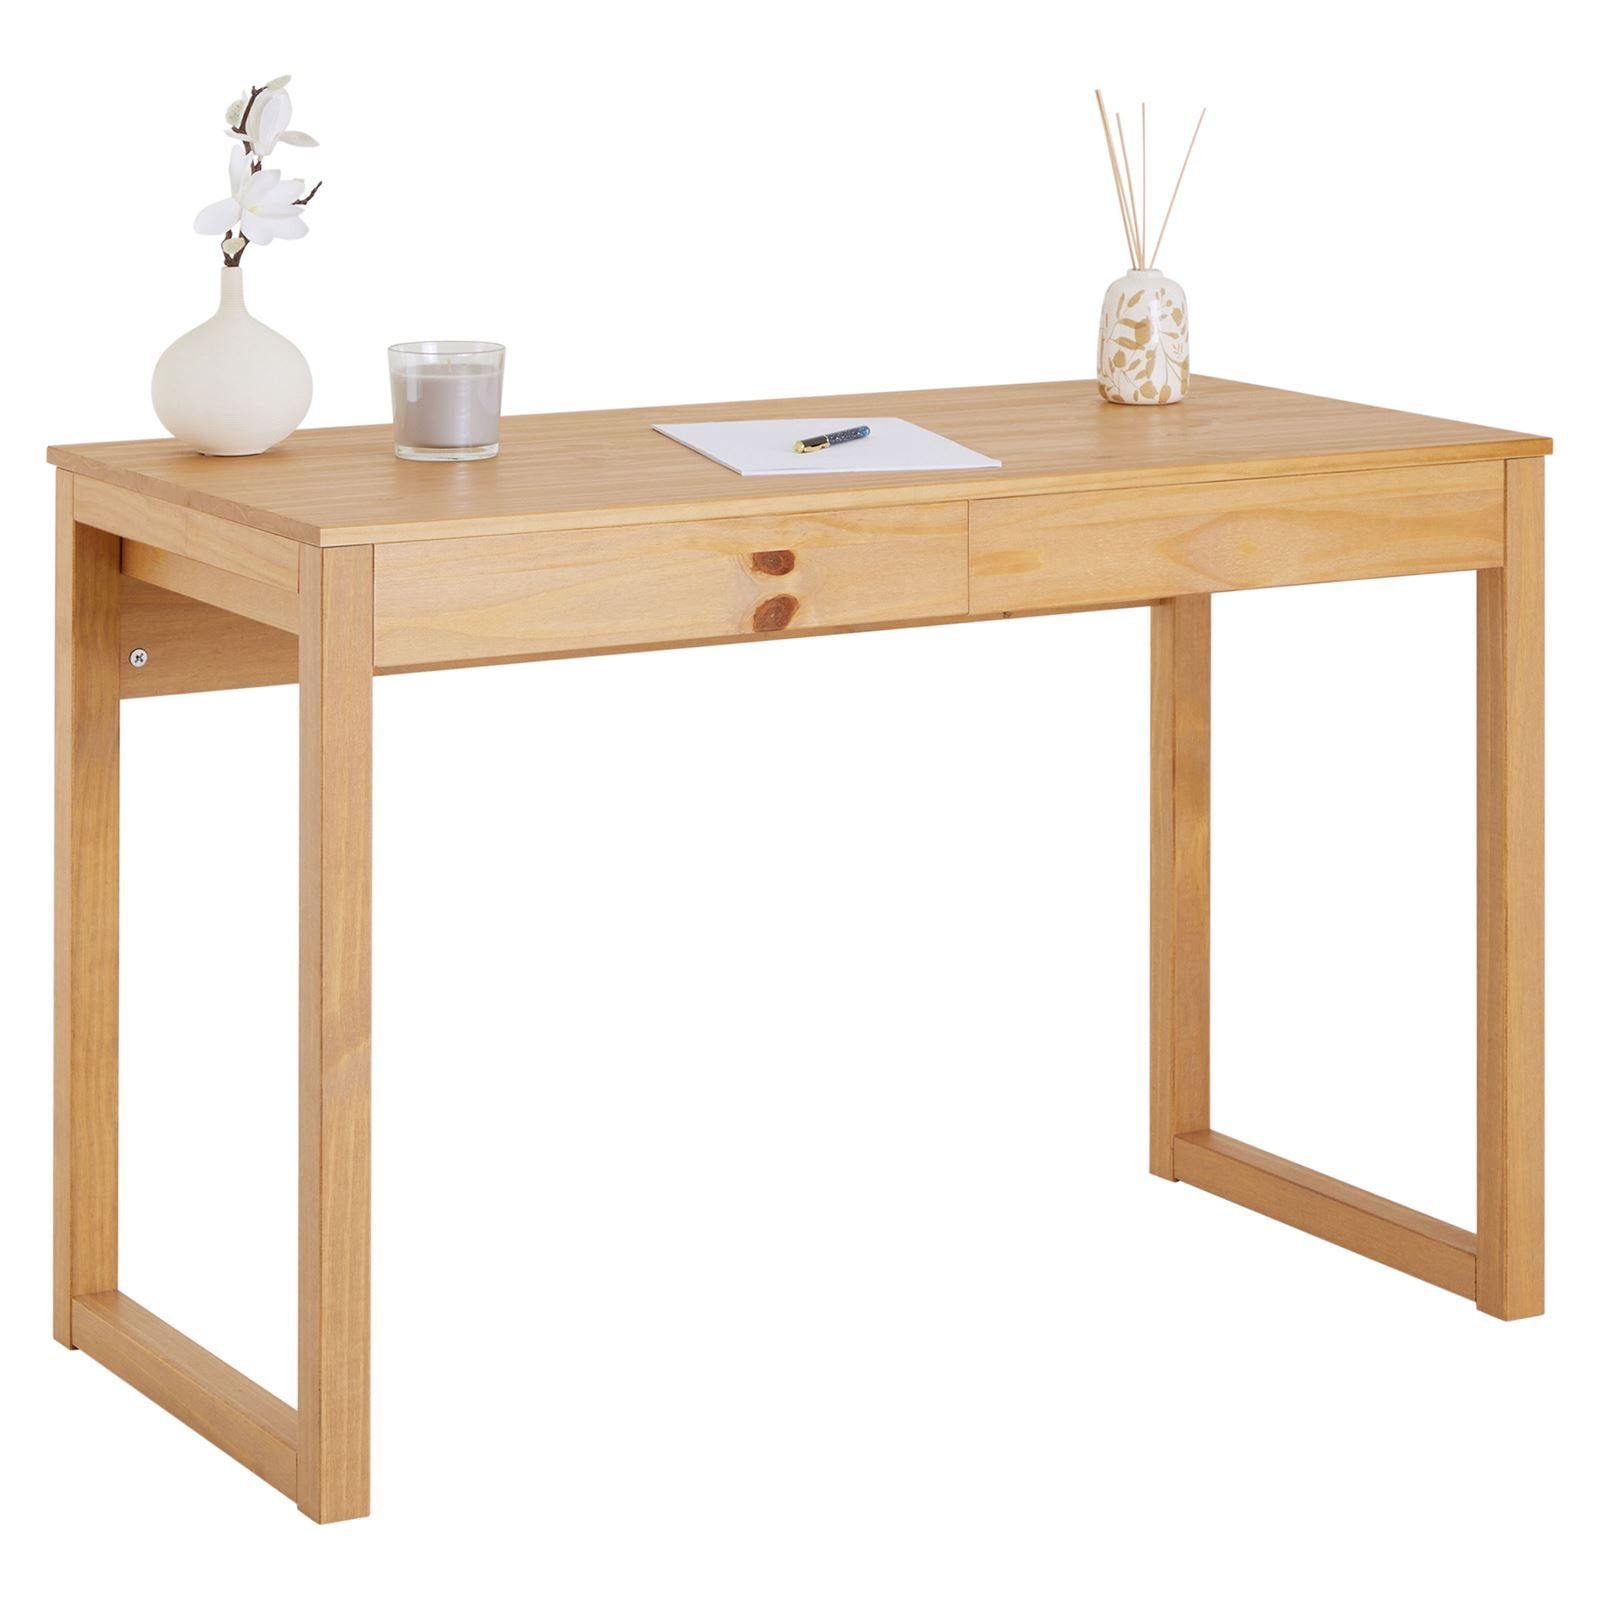 IDIMEX Schreibtisch NOAH, Schreibtischin in natur aus Kiefer Tisch mit 2 Schubladen aus Massivho braun | Jugendschreibtische